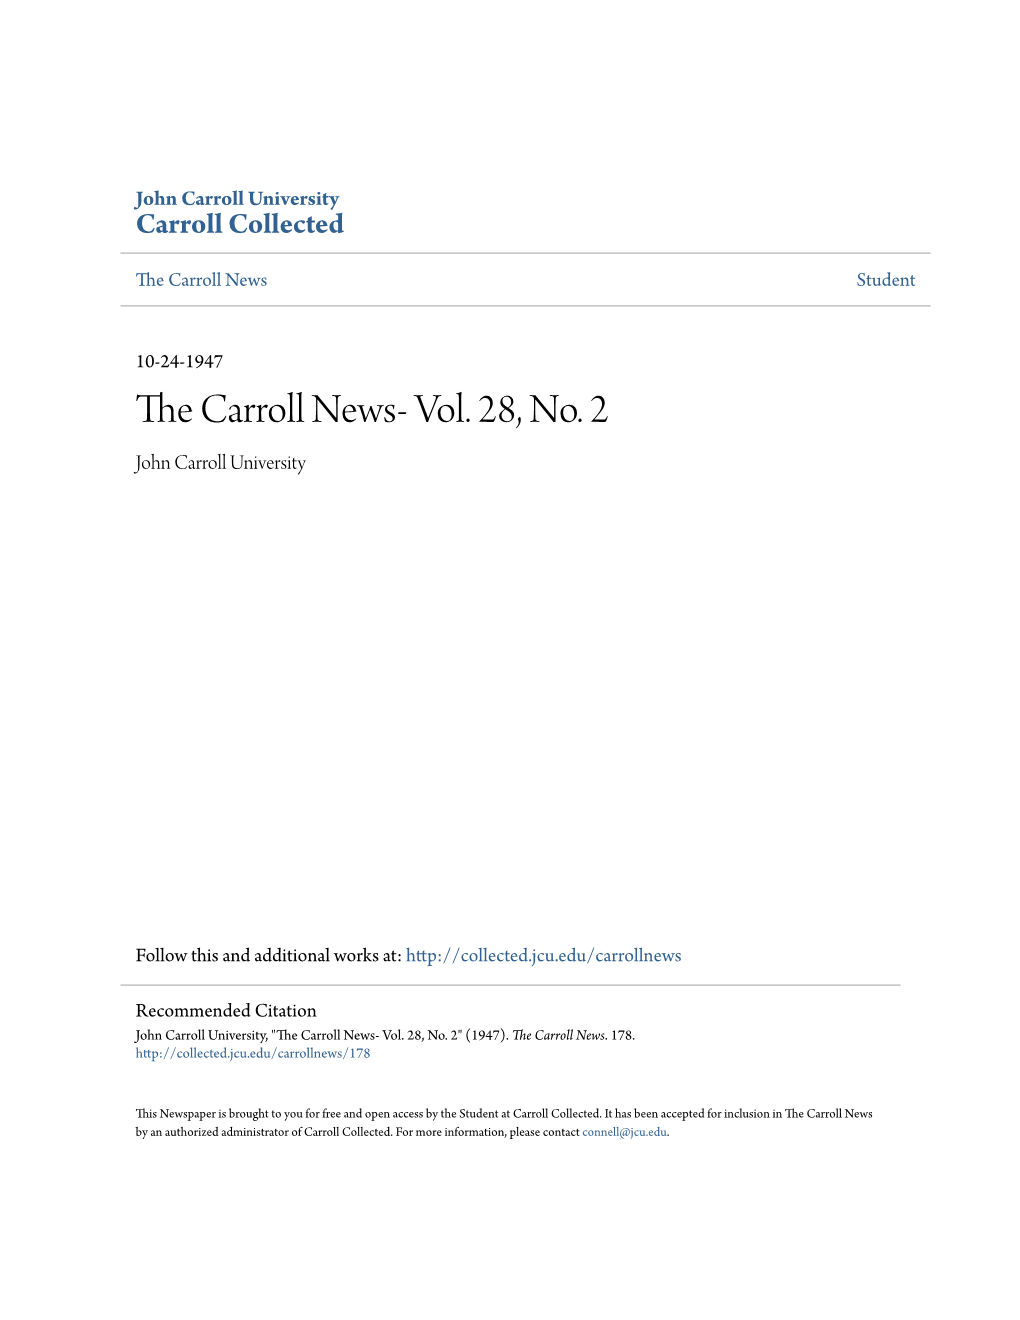 The Carroll News- Vol. 28, No. 2